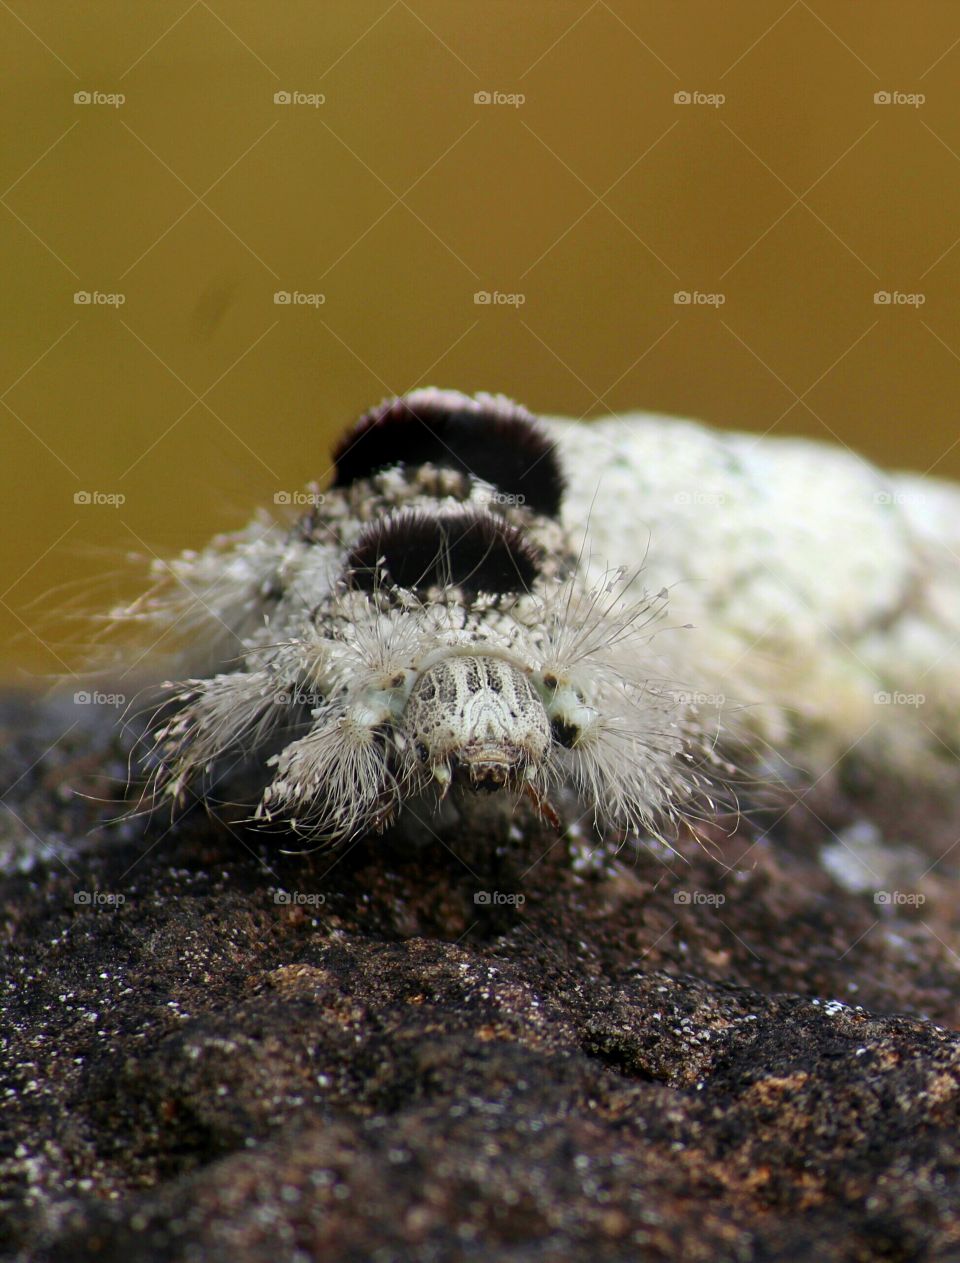 Hairy Caterpillar on stone